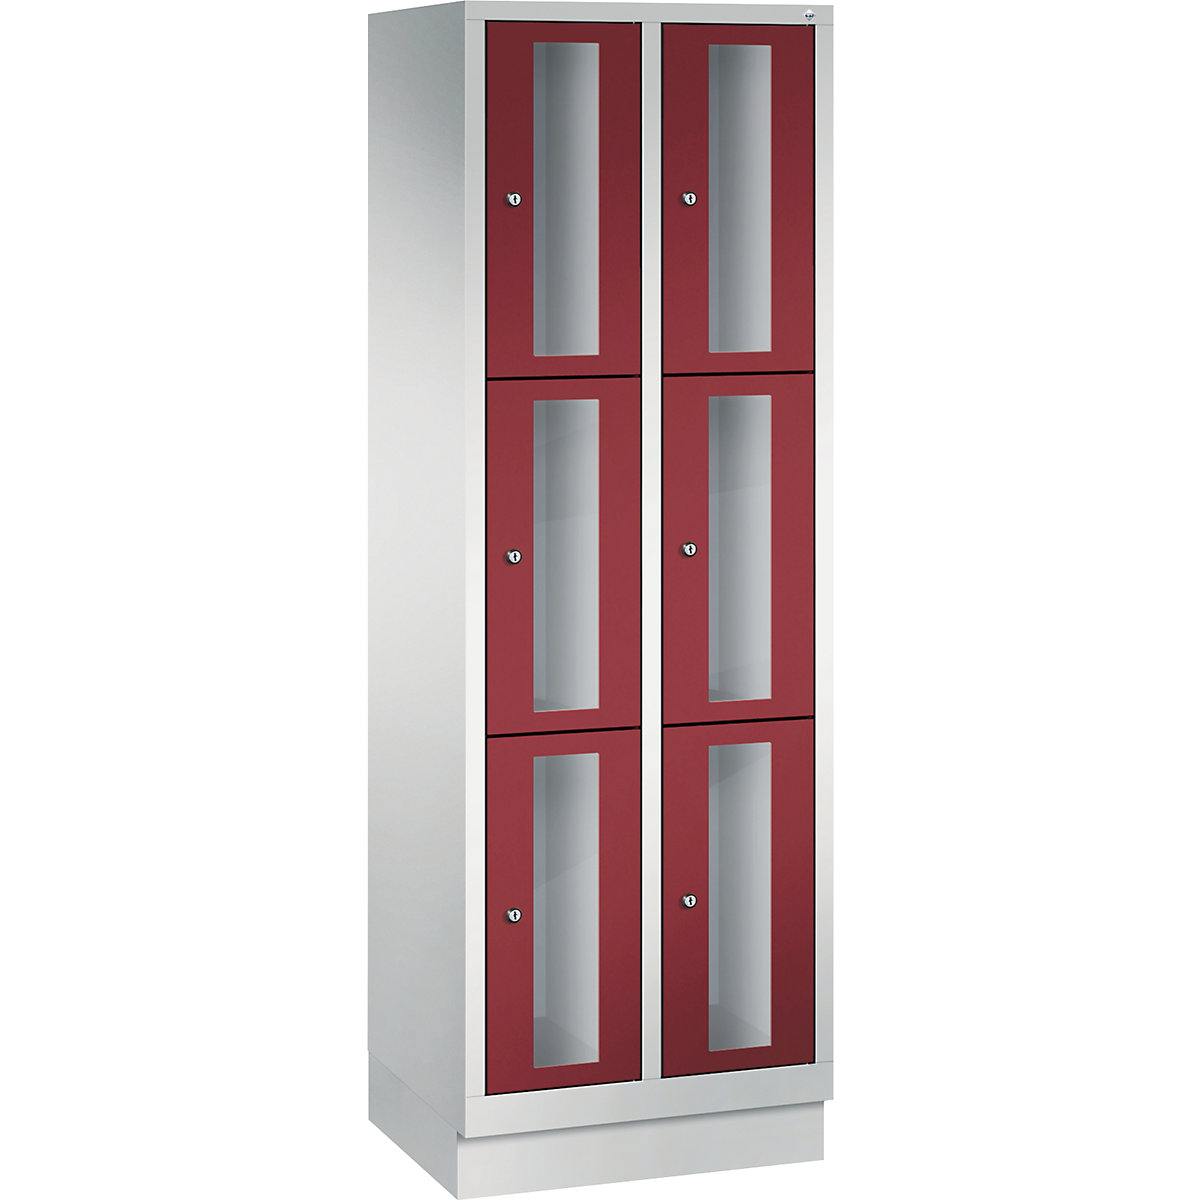 CLASSIC rekeszes szekrény, 510 mm-es rekeszmagasság, lábazattal – C+P, 6 rekesz, szélesség 610 mm, rubinvörös ajtó-8